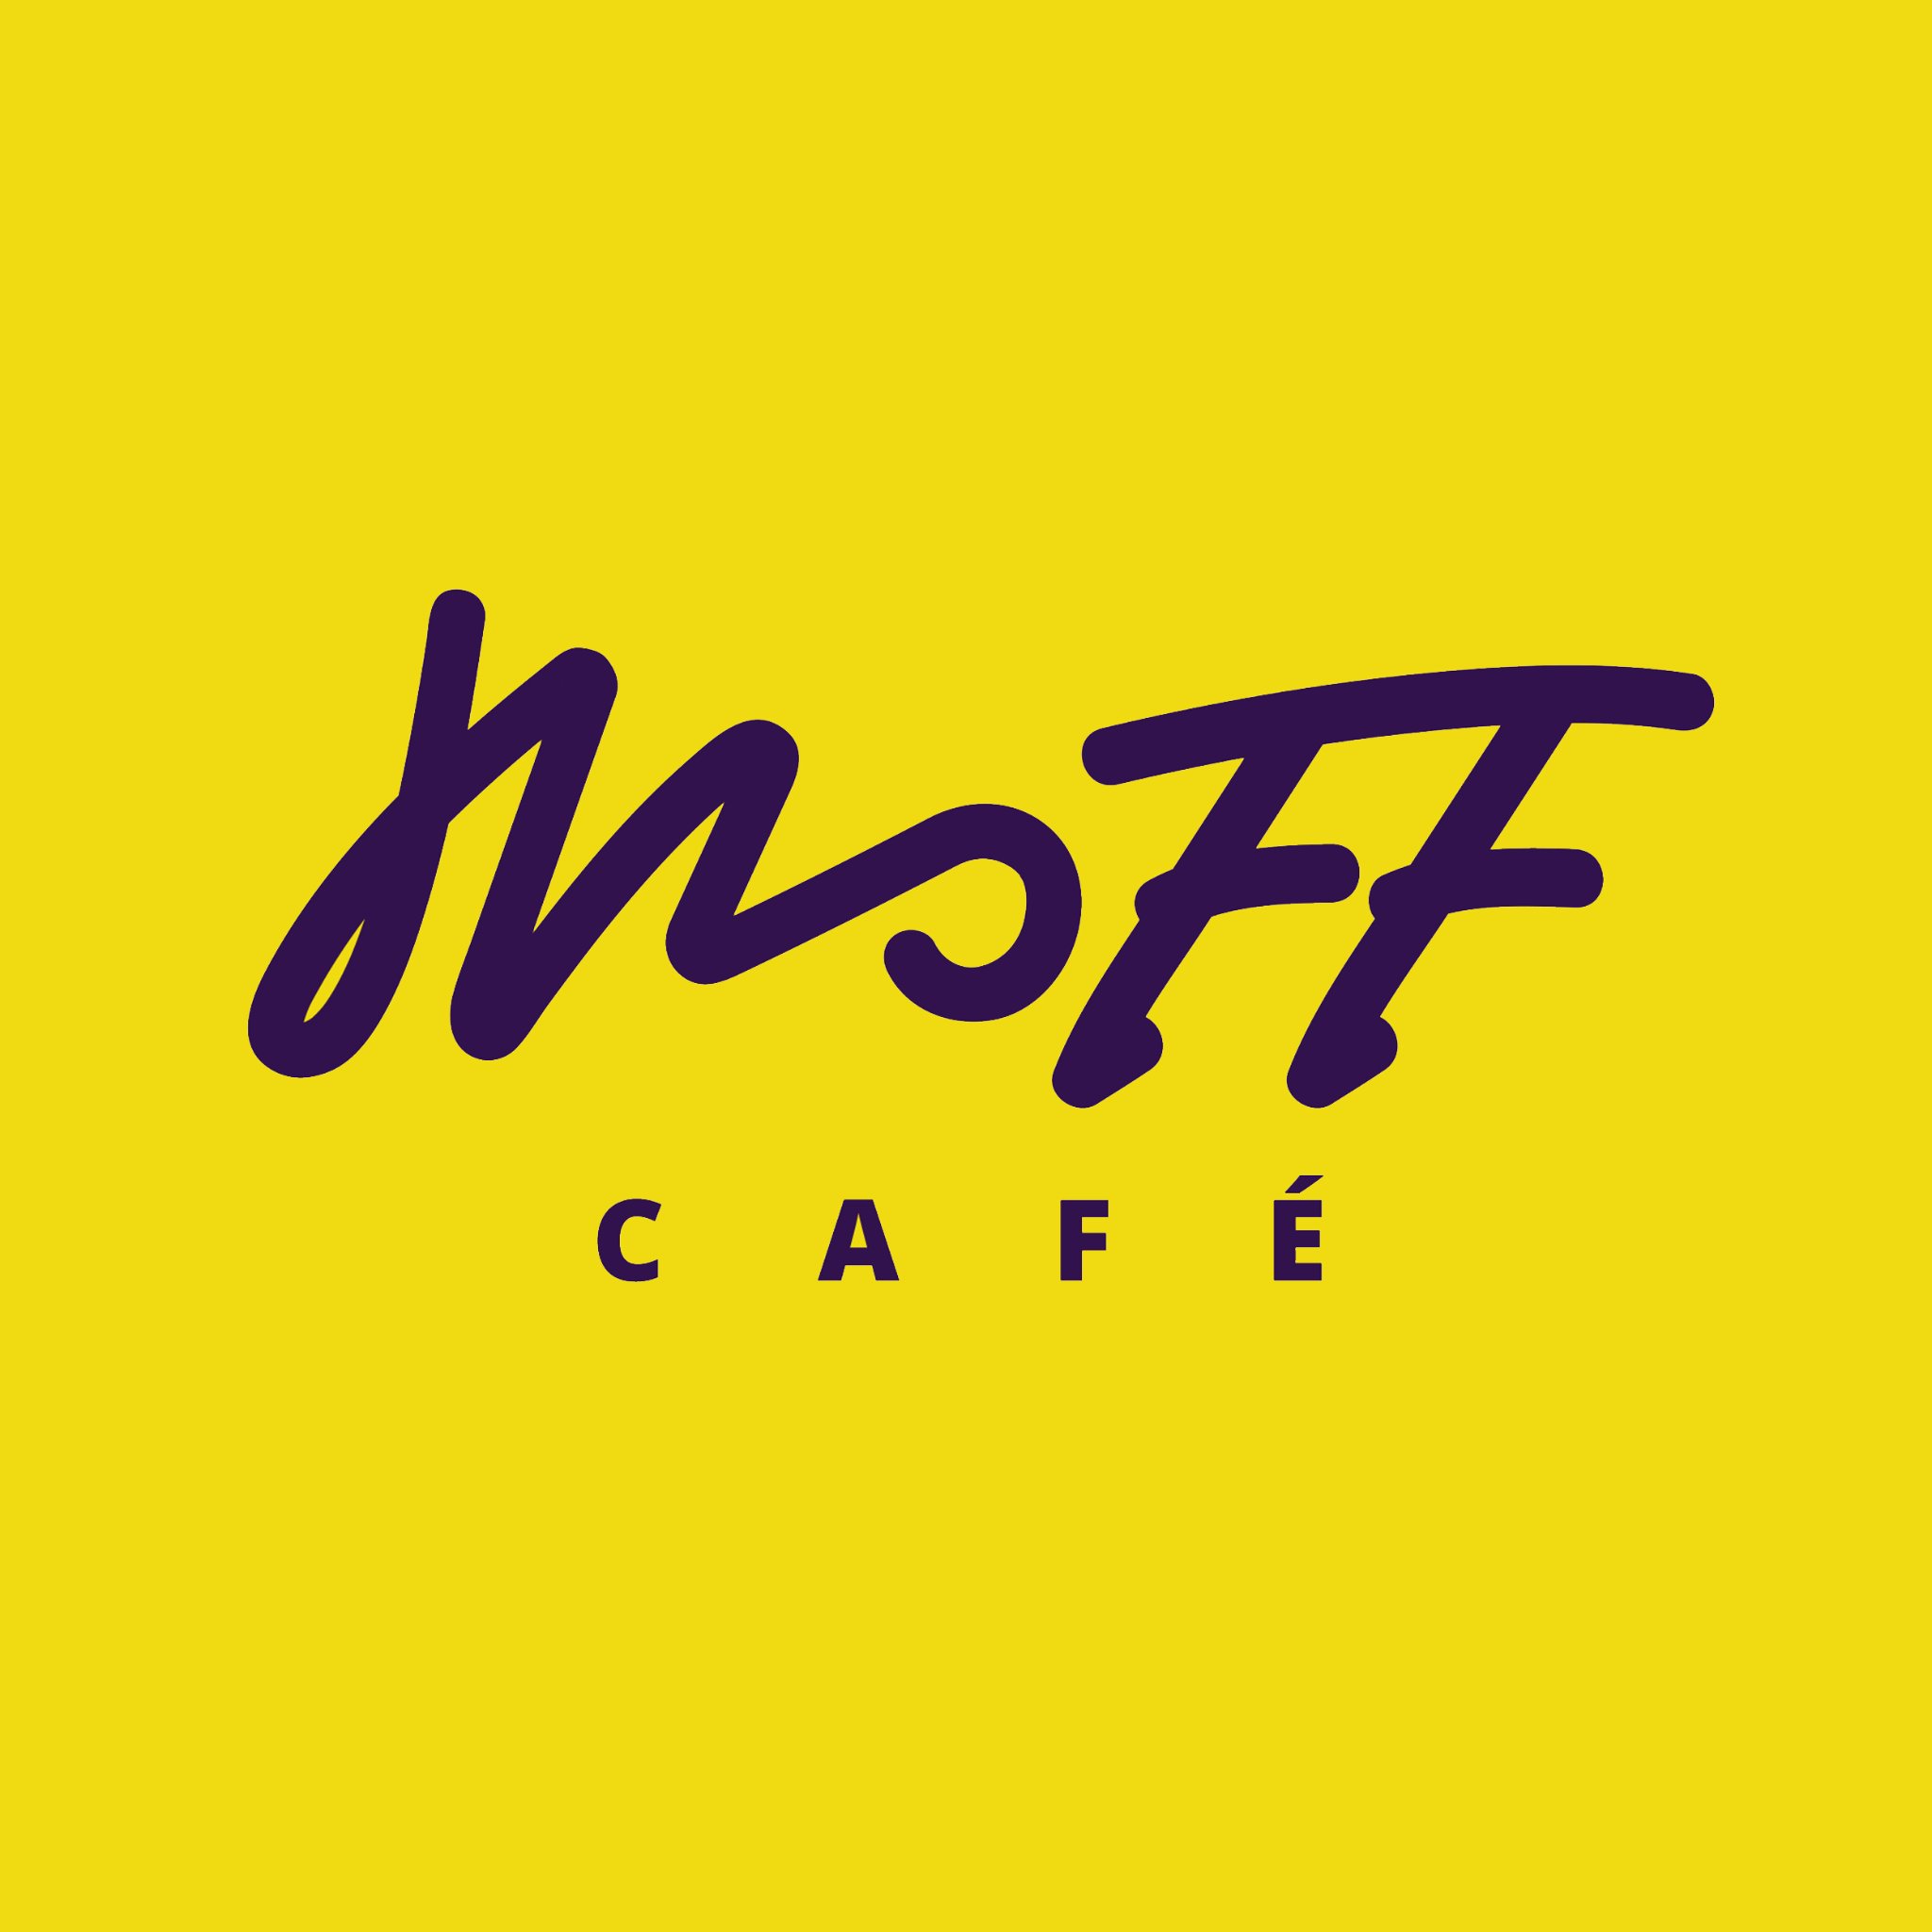 Nuestro local está ubicado en el C.C Hito, PB, Los Teques - Entre la Av. Bermúdez y la Calle Carabobo 📌
   ➡Facebook: Moff Café
➡ Instagram: Moffcafe.losteques